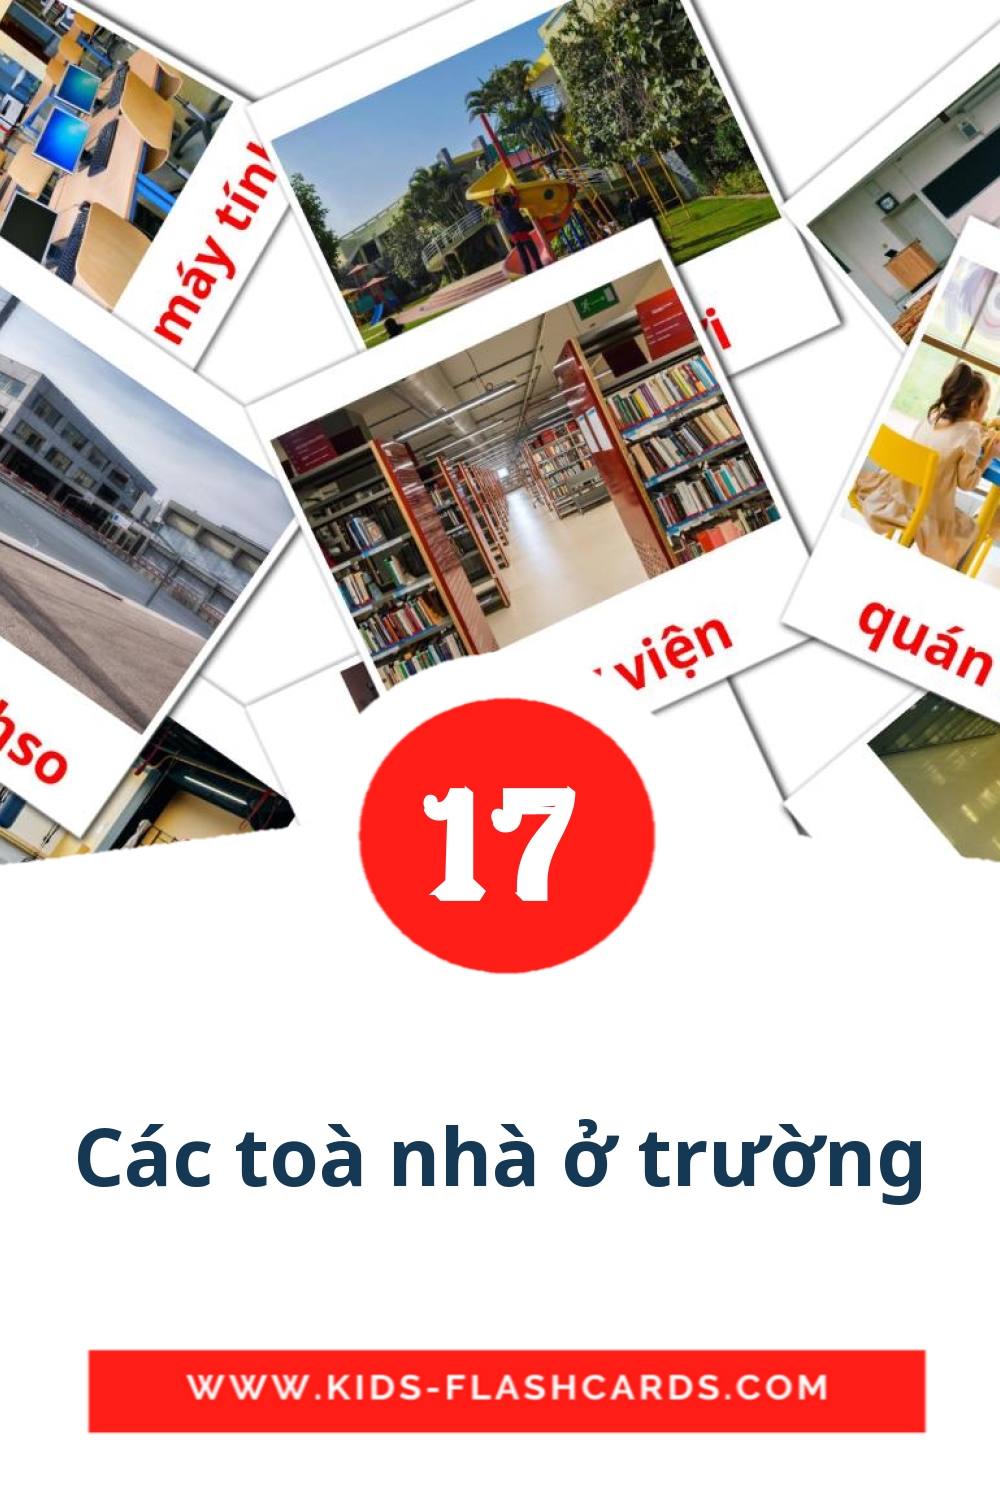 17 carte illustrate di Các toà nhà ở trường per la scuola materna in vietnamita